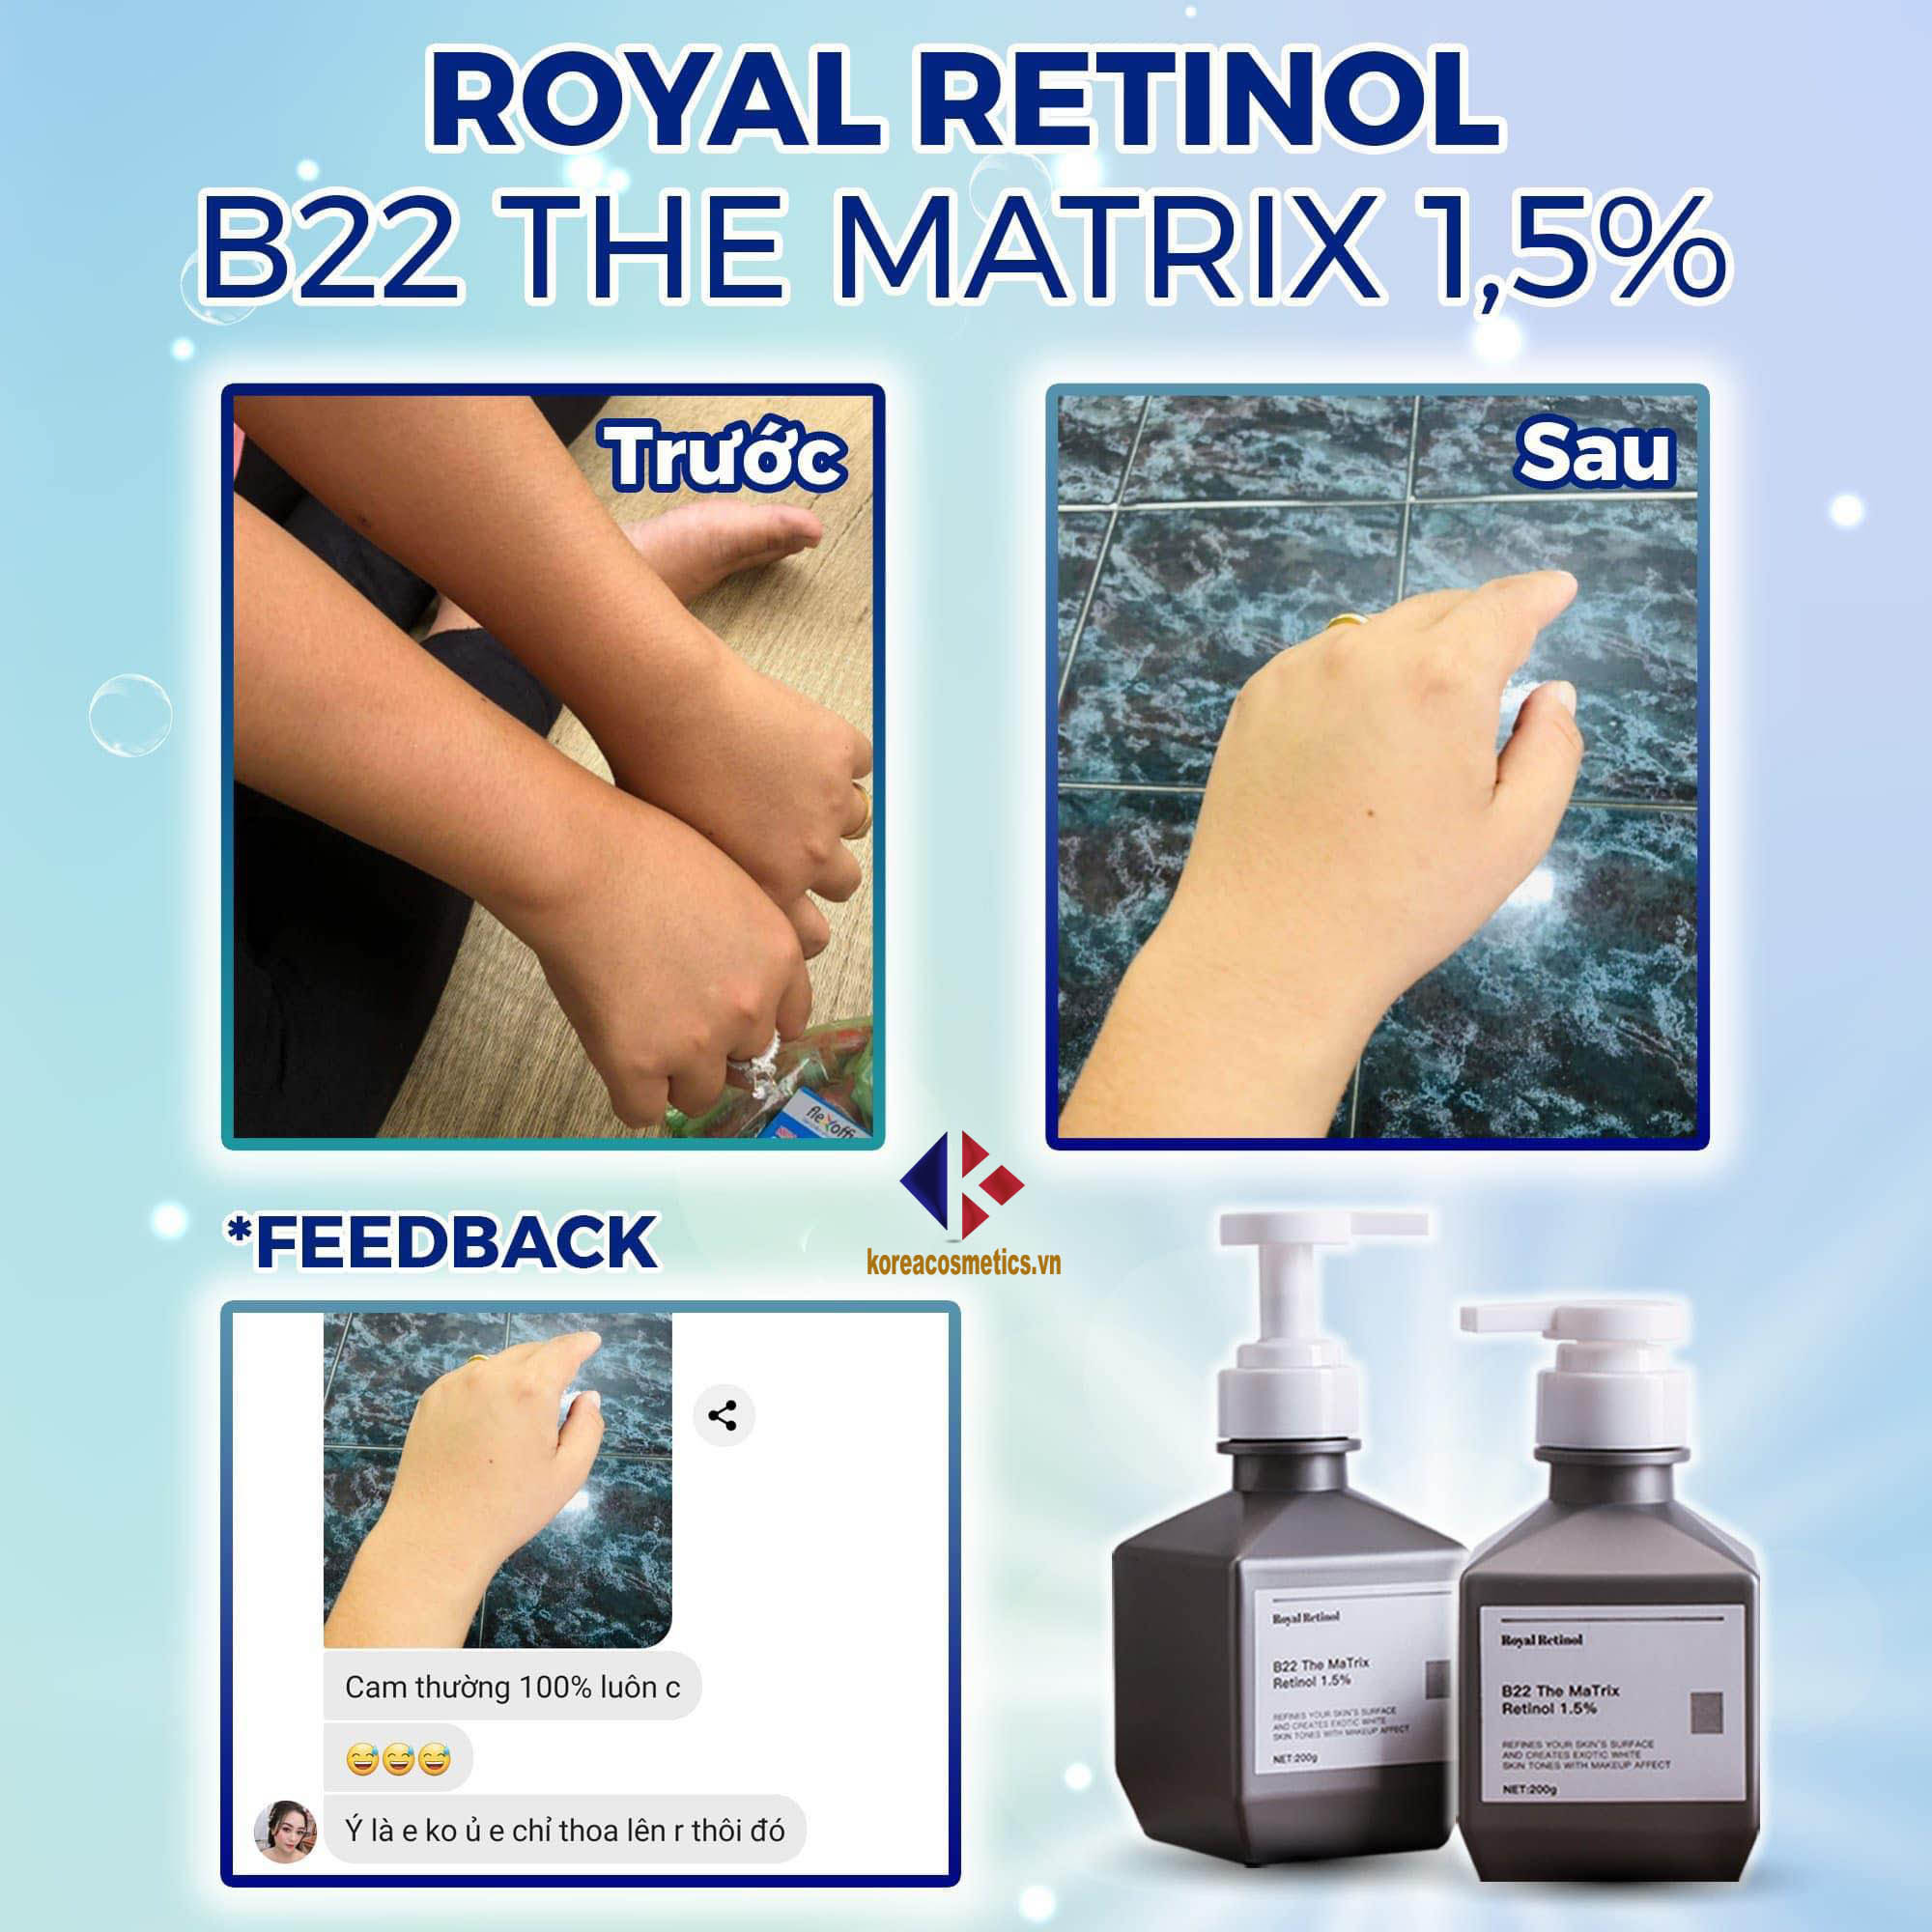 Royal Retinol B22 The Matrix